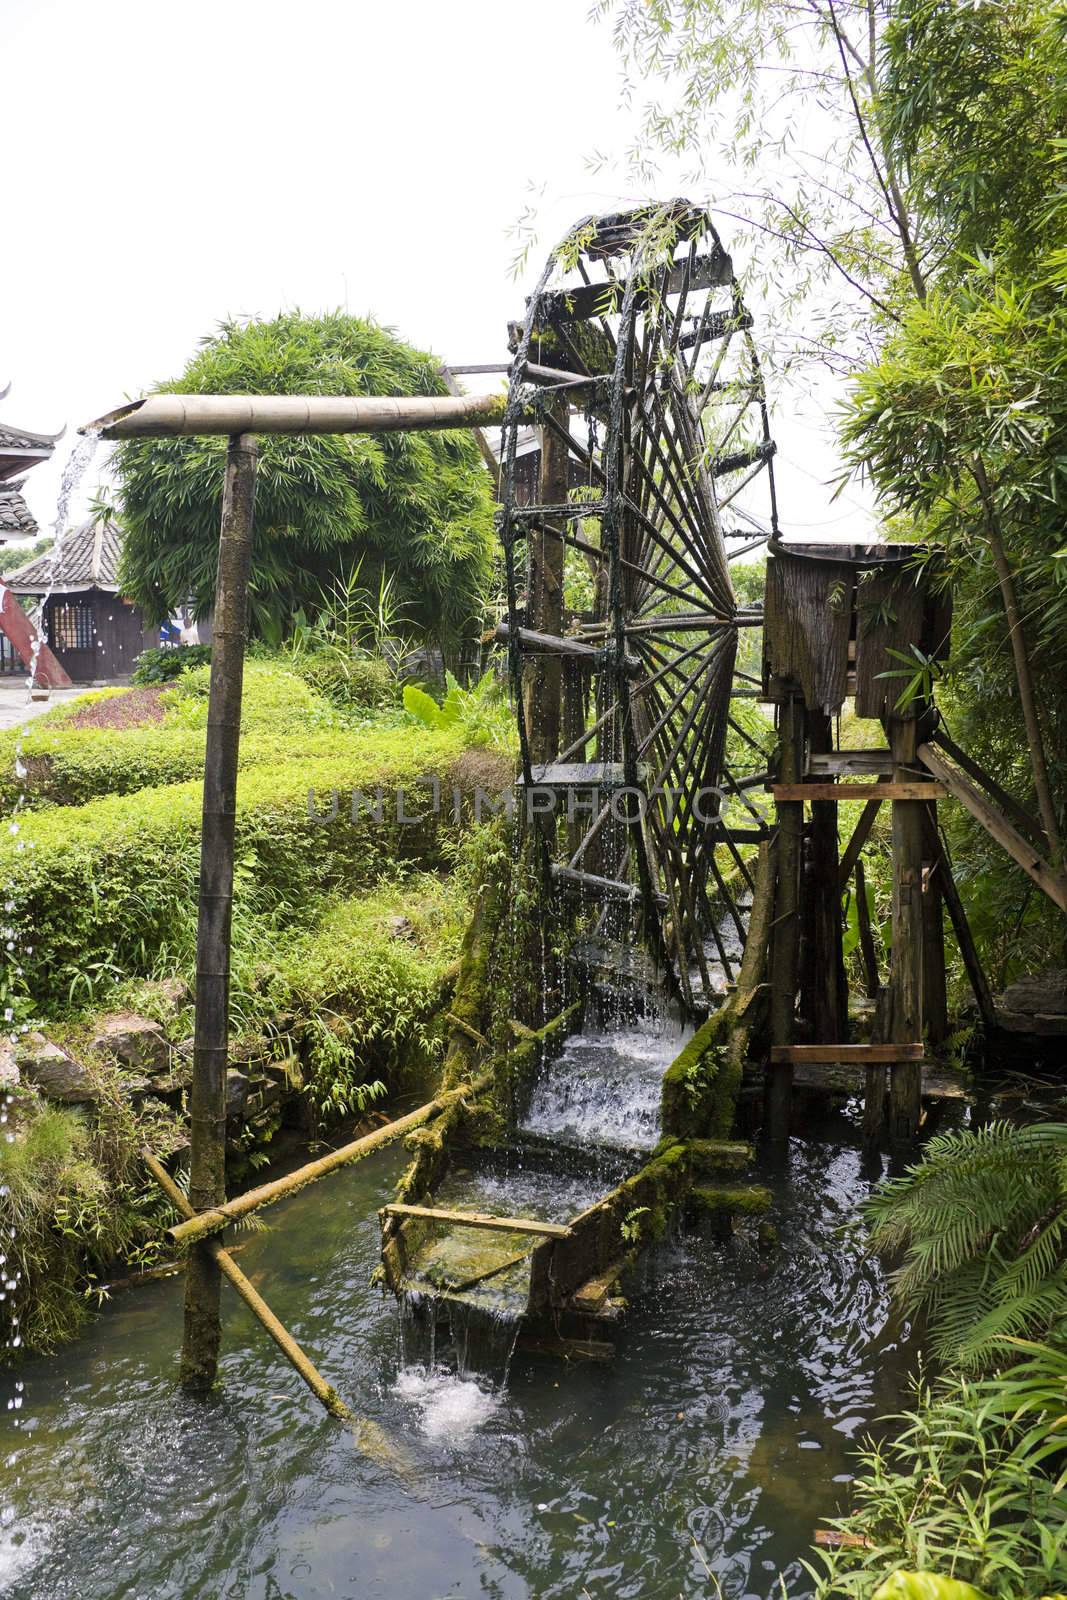 Image of a paddy farmer's water wheel irrigator at Guilin, China.